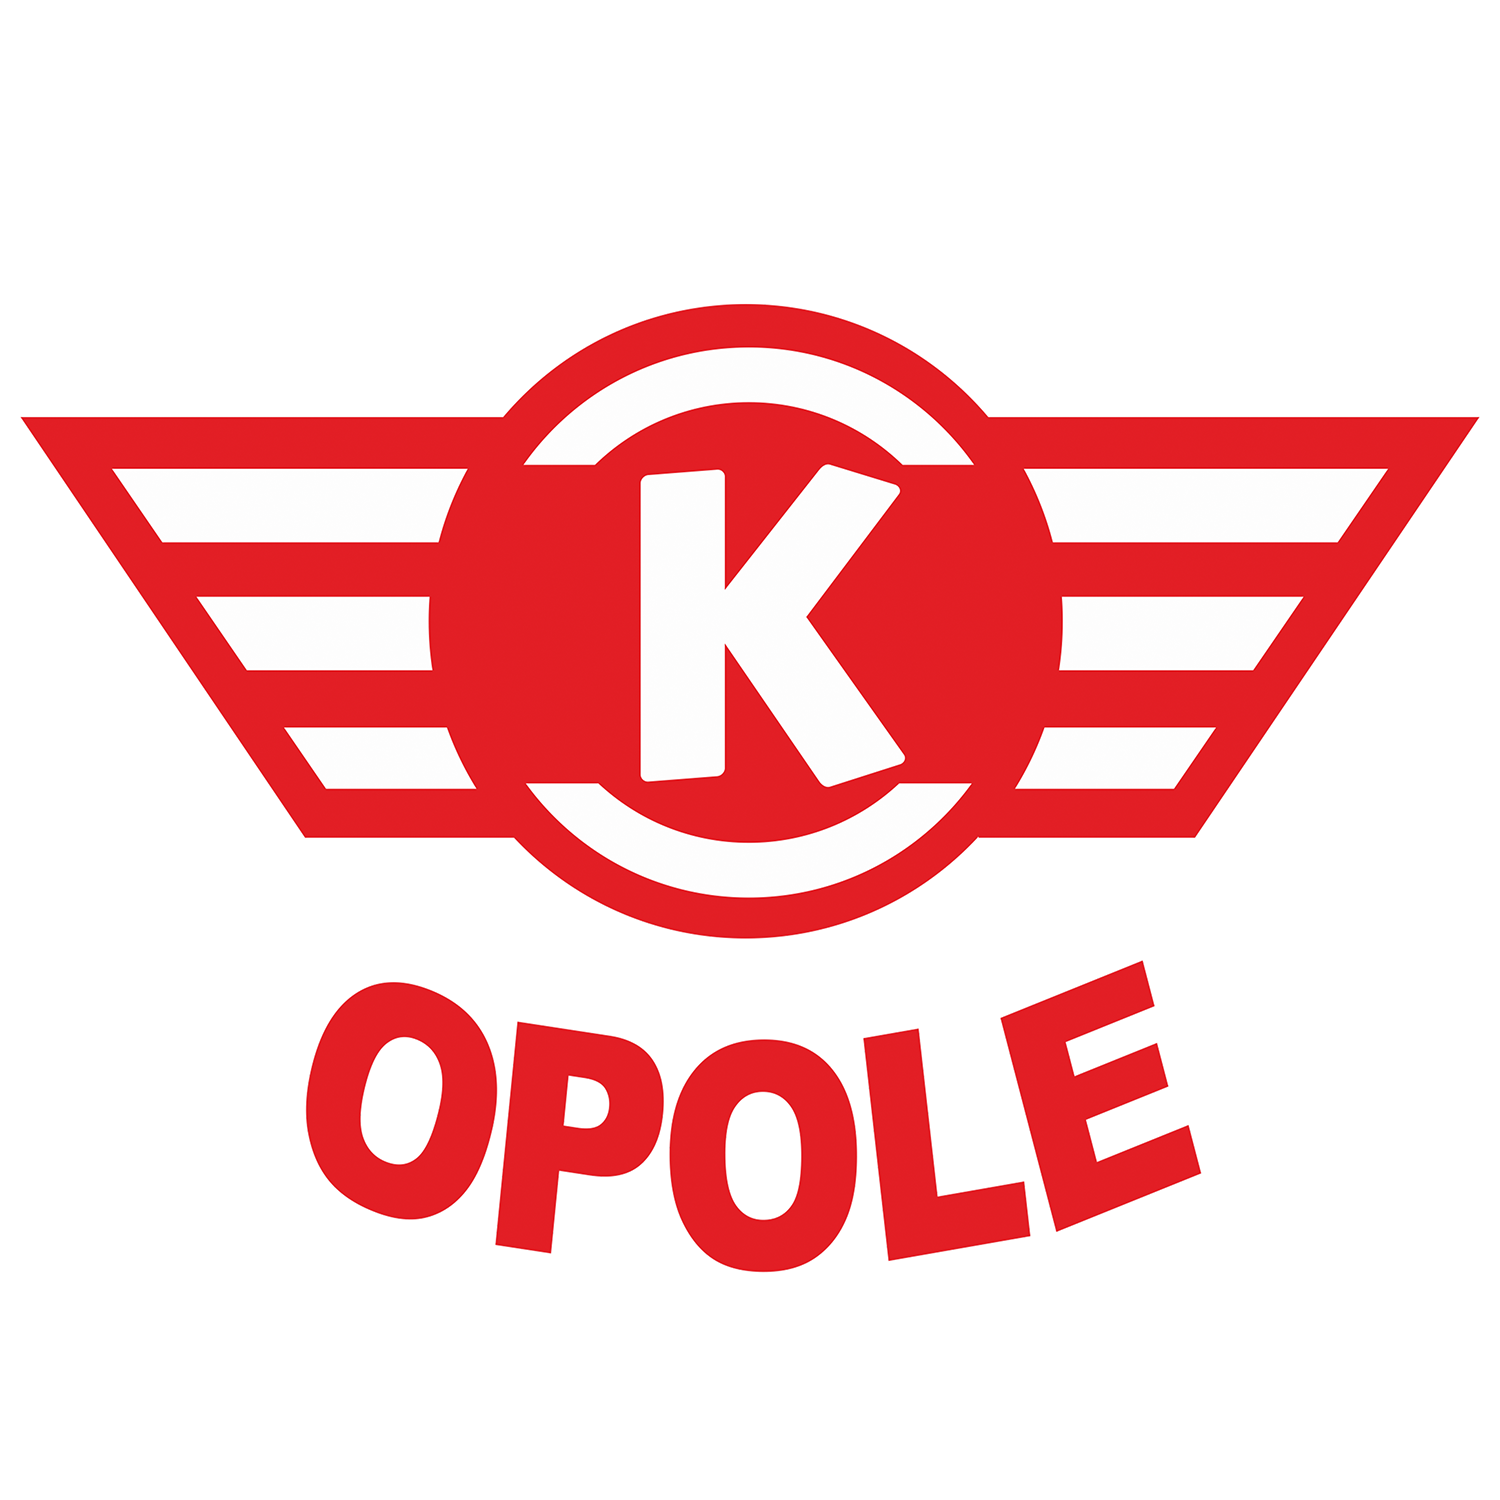 KO.png Logo